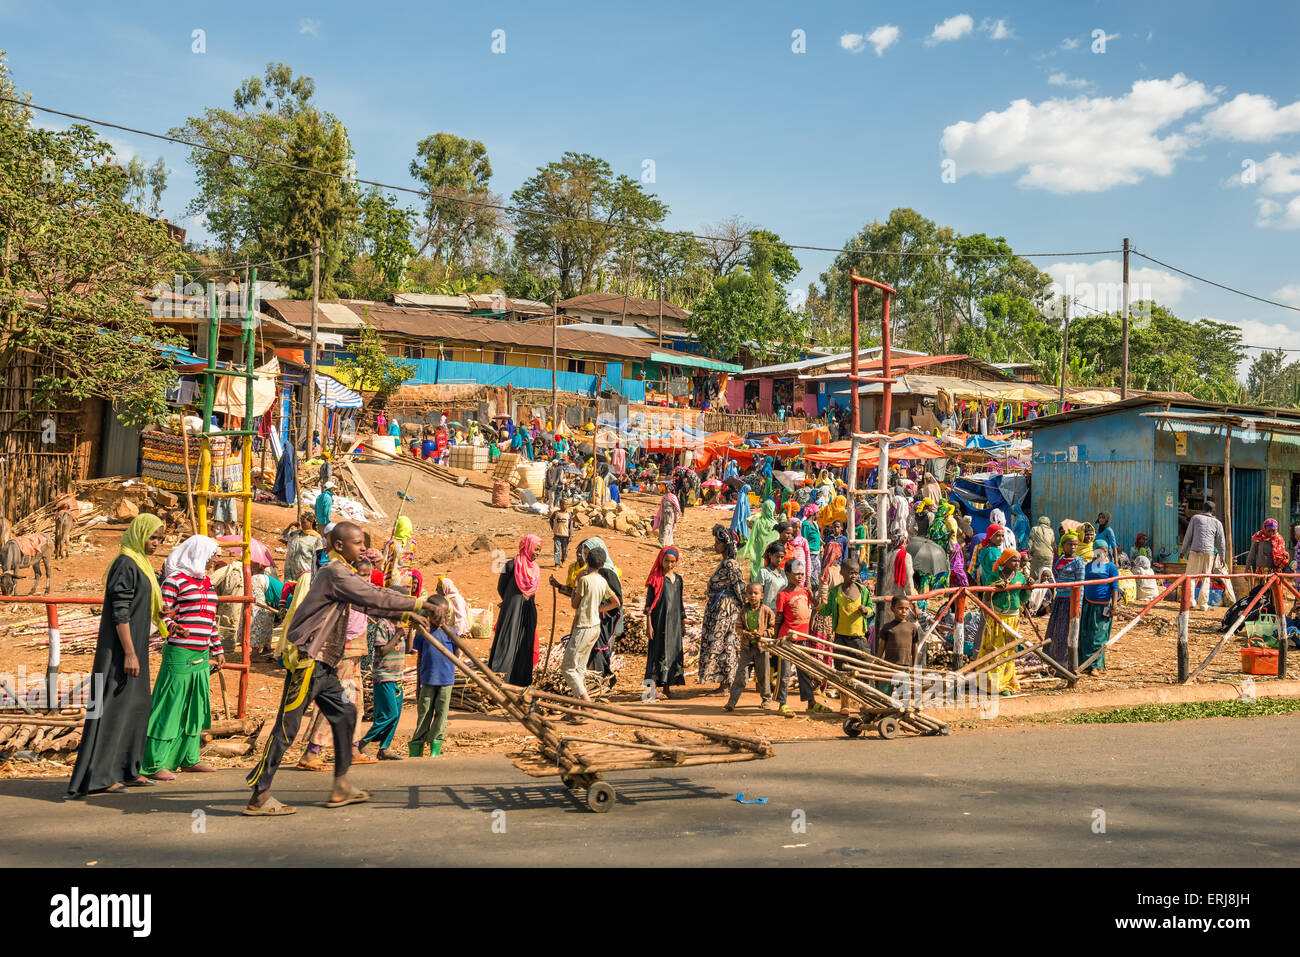 Popolare e affollato mercato africano vicino ad Addis Abeba, Etiopia con molte persone che acquistano e vendono. Foto Stock